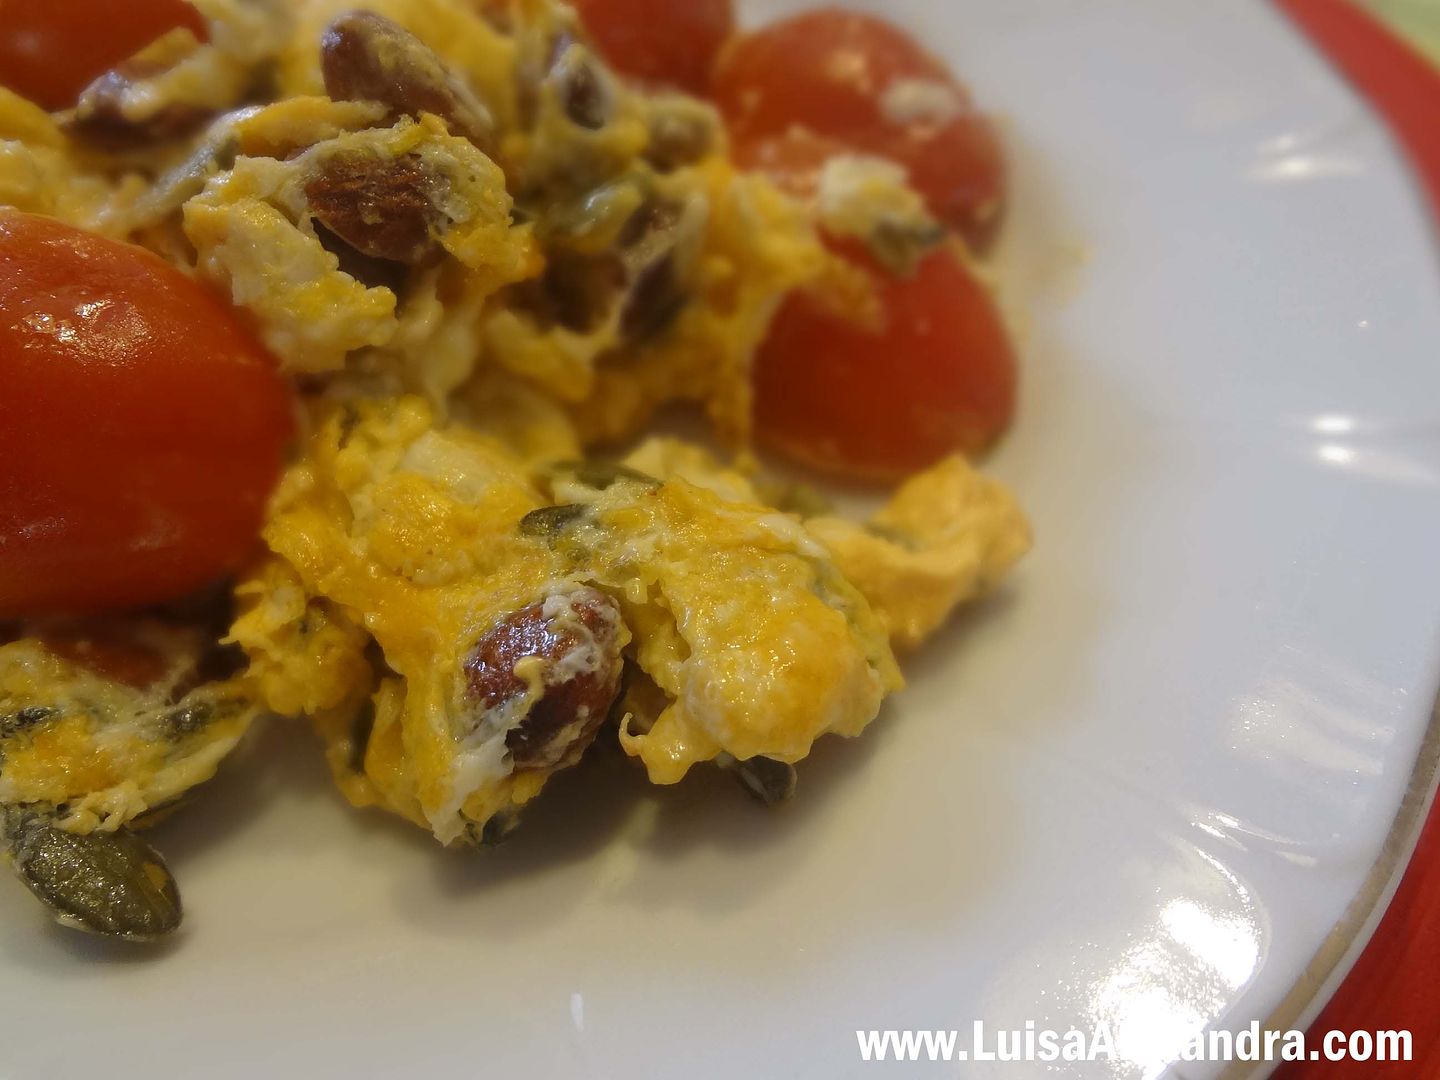 Ovos Mexidos com Tomate Berry, amendoas, sementes de abobora e queijo cool photo file-1717.jpg